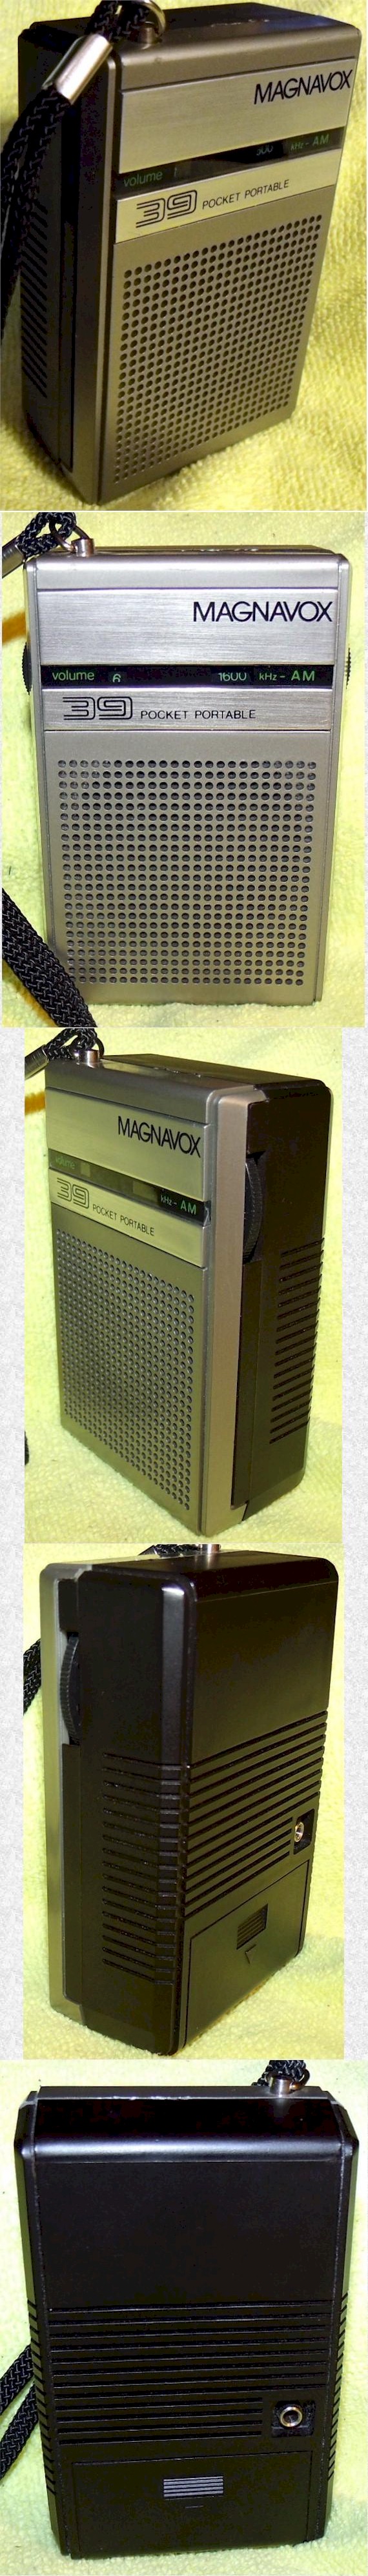 Magnavox 39 